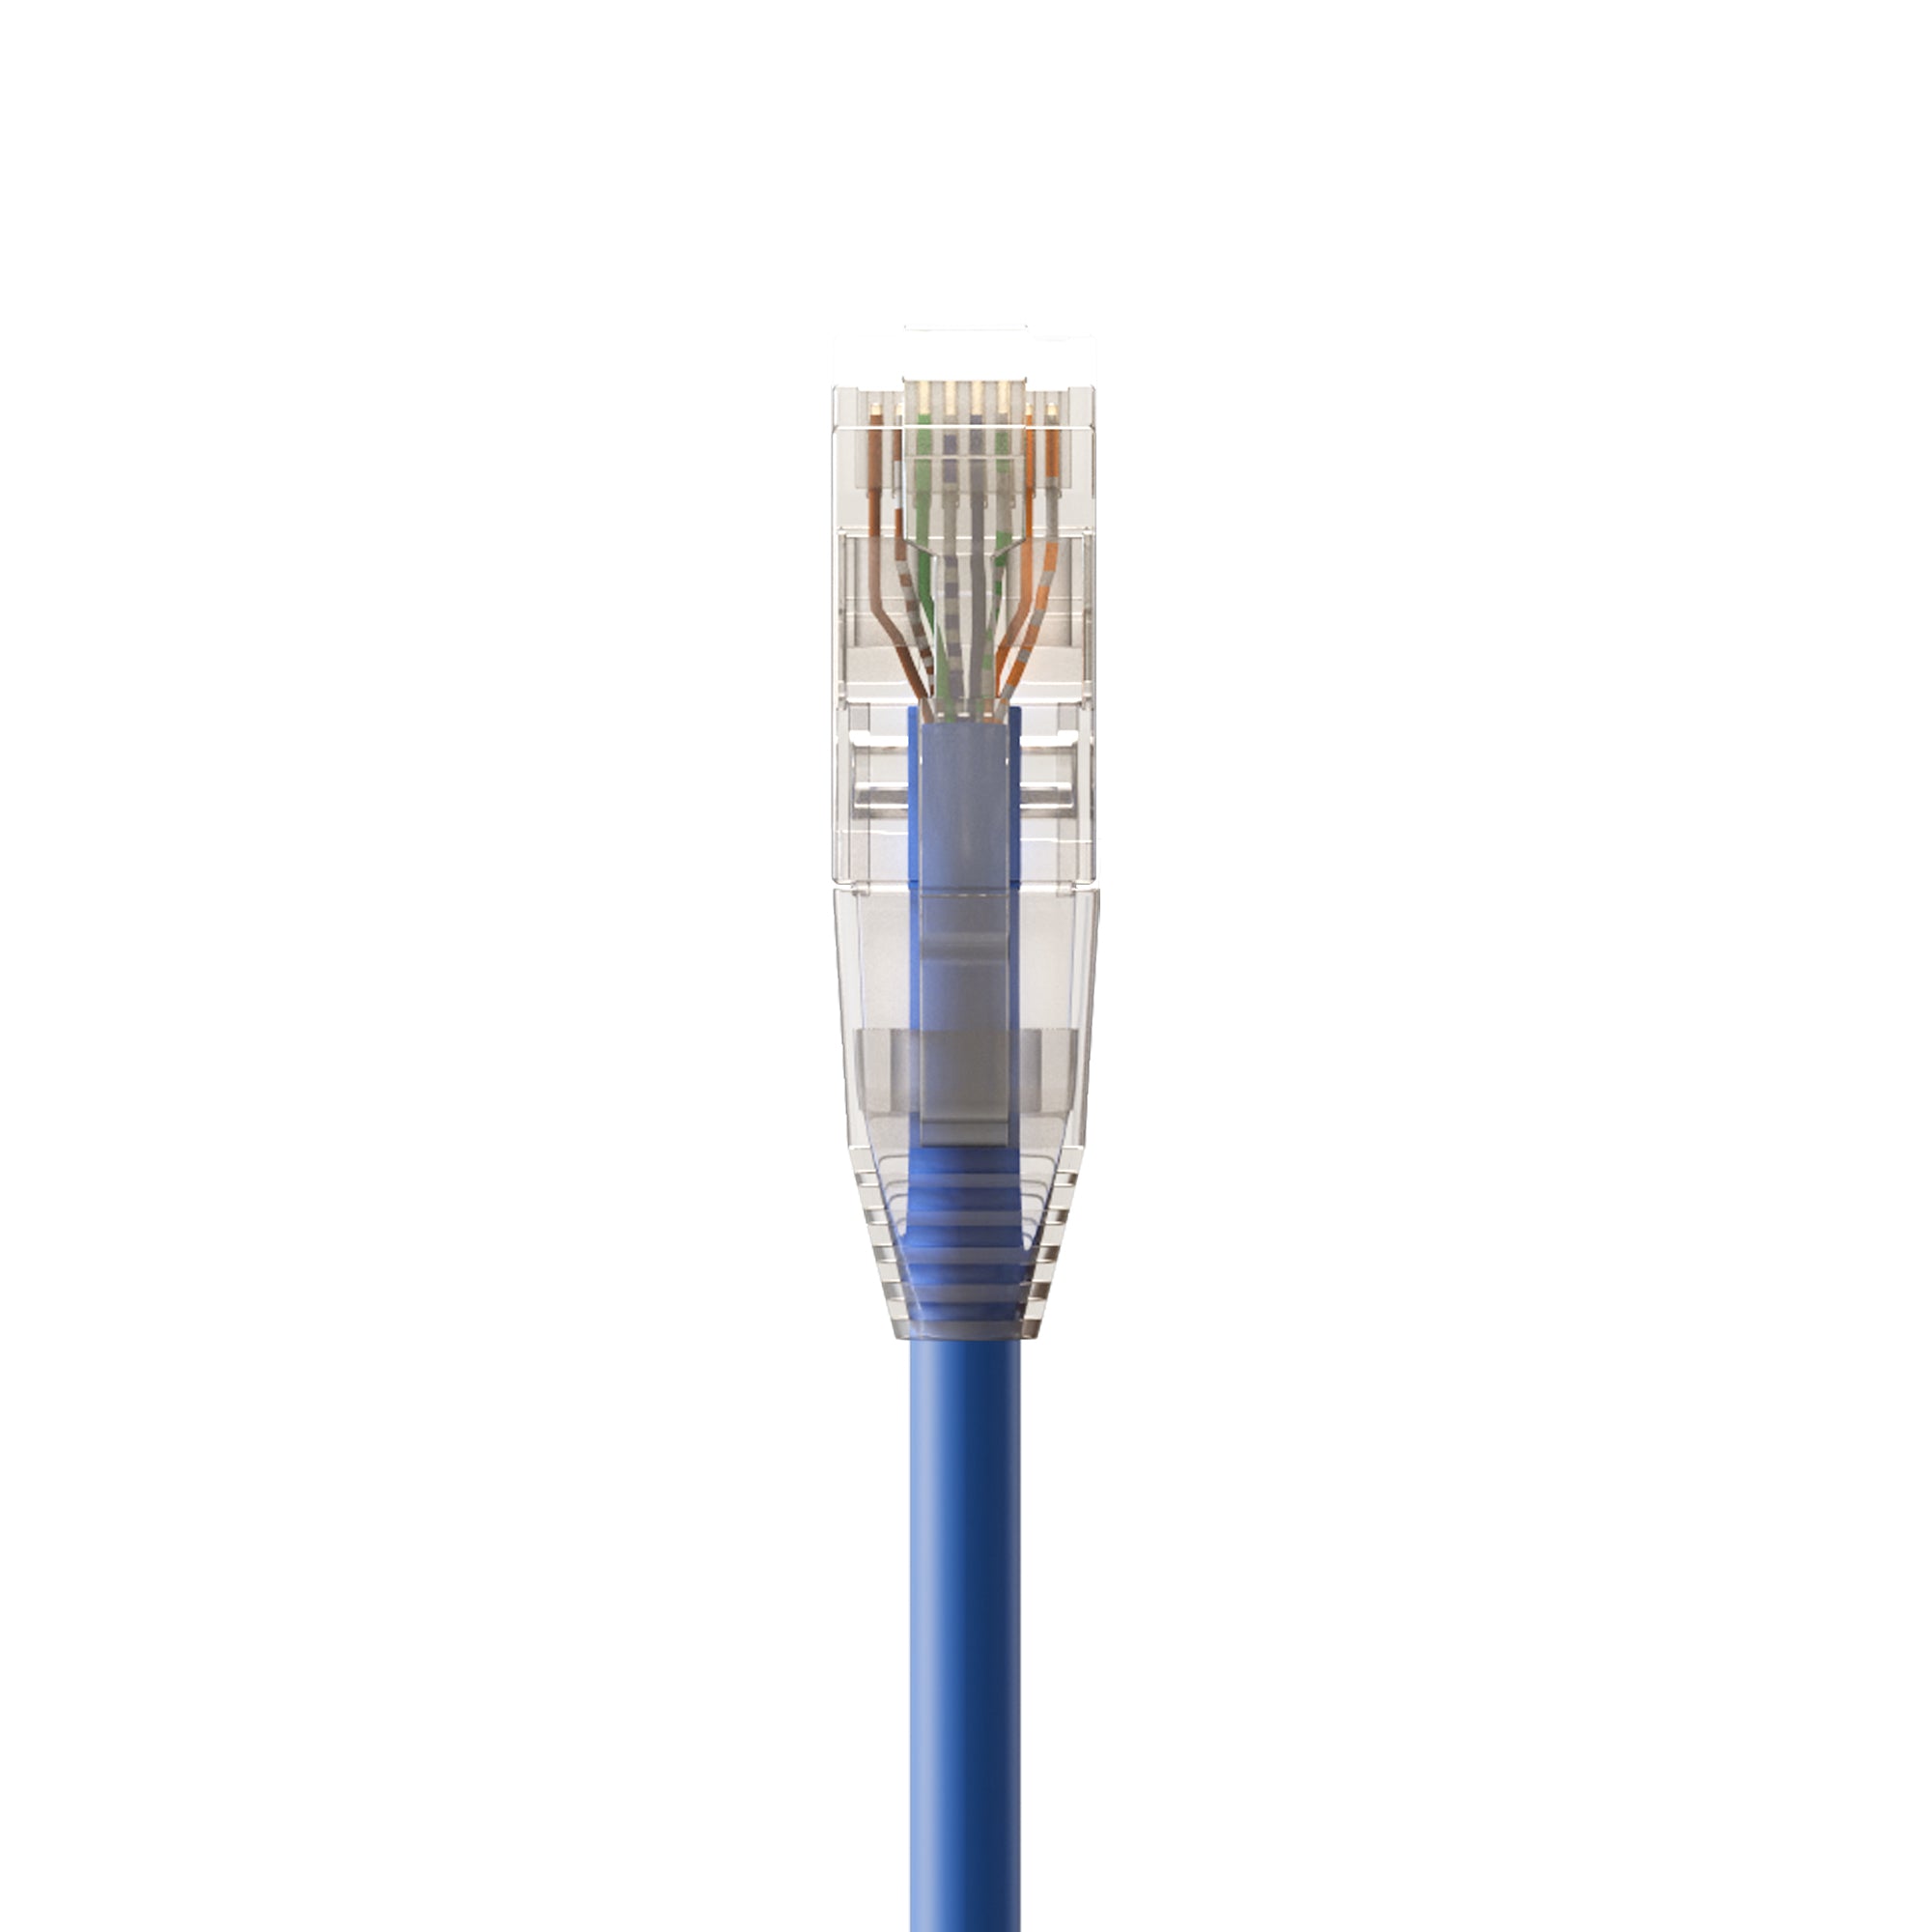 Cat5e RJ45 Standard Modular Plugs, Unshielded (UTP) Network